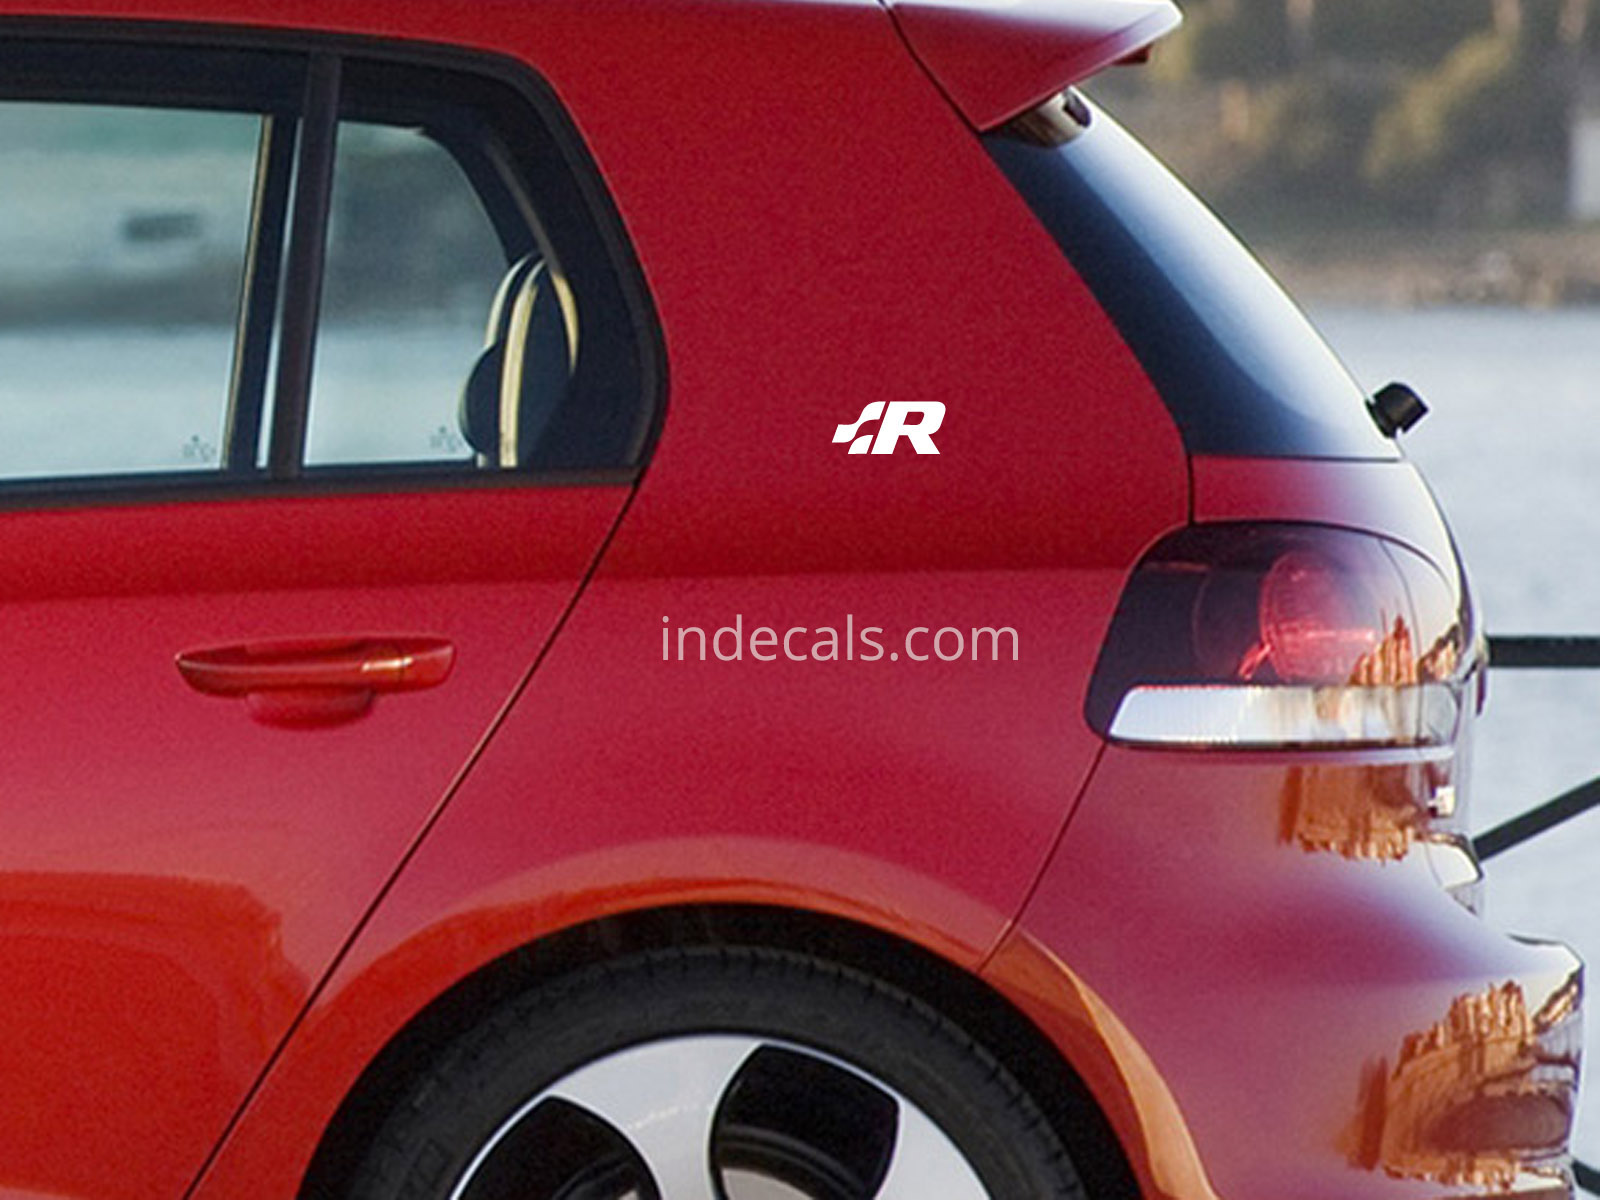 2 x Volkswagen Racing stickers for Rear Quarter